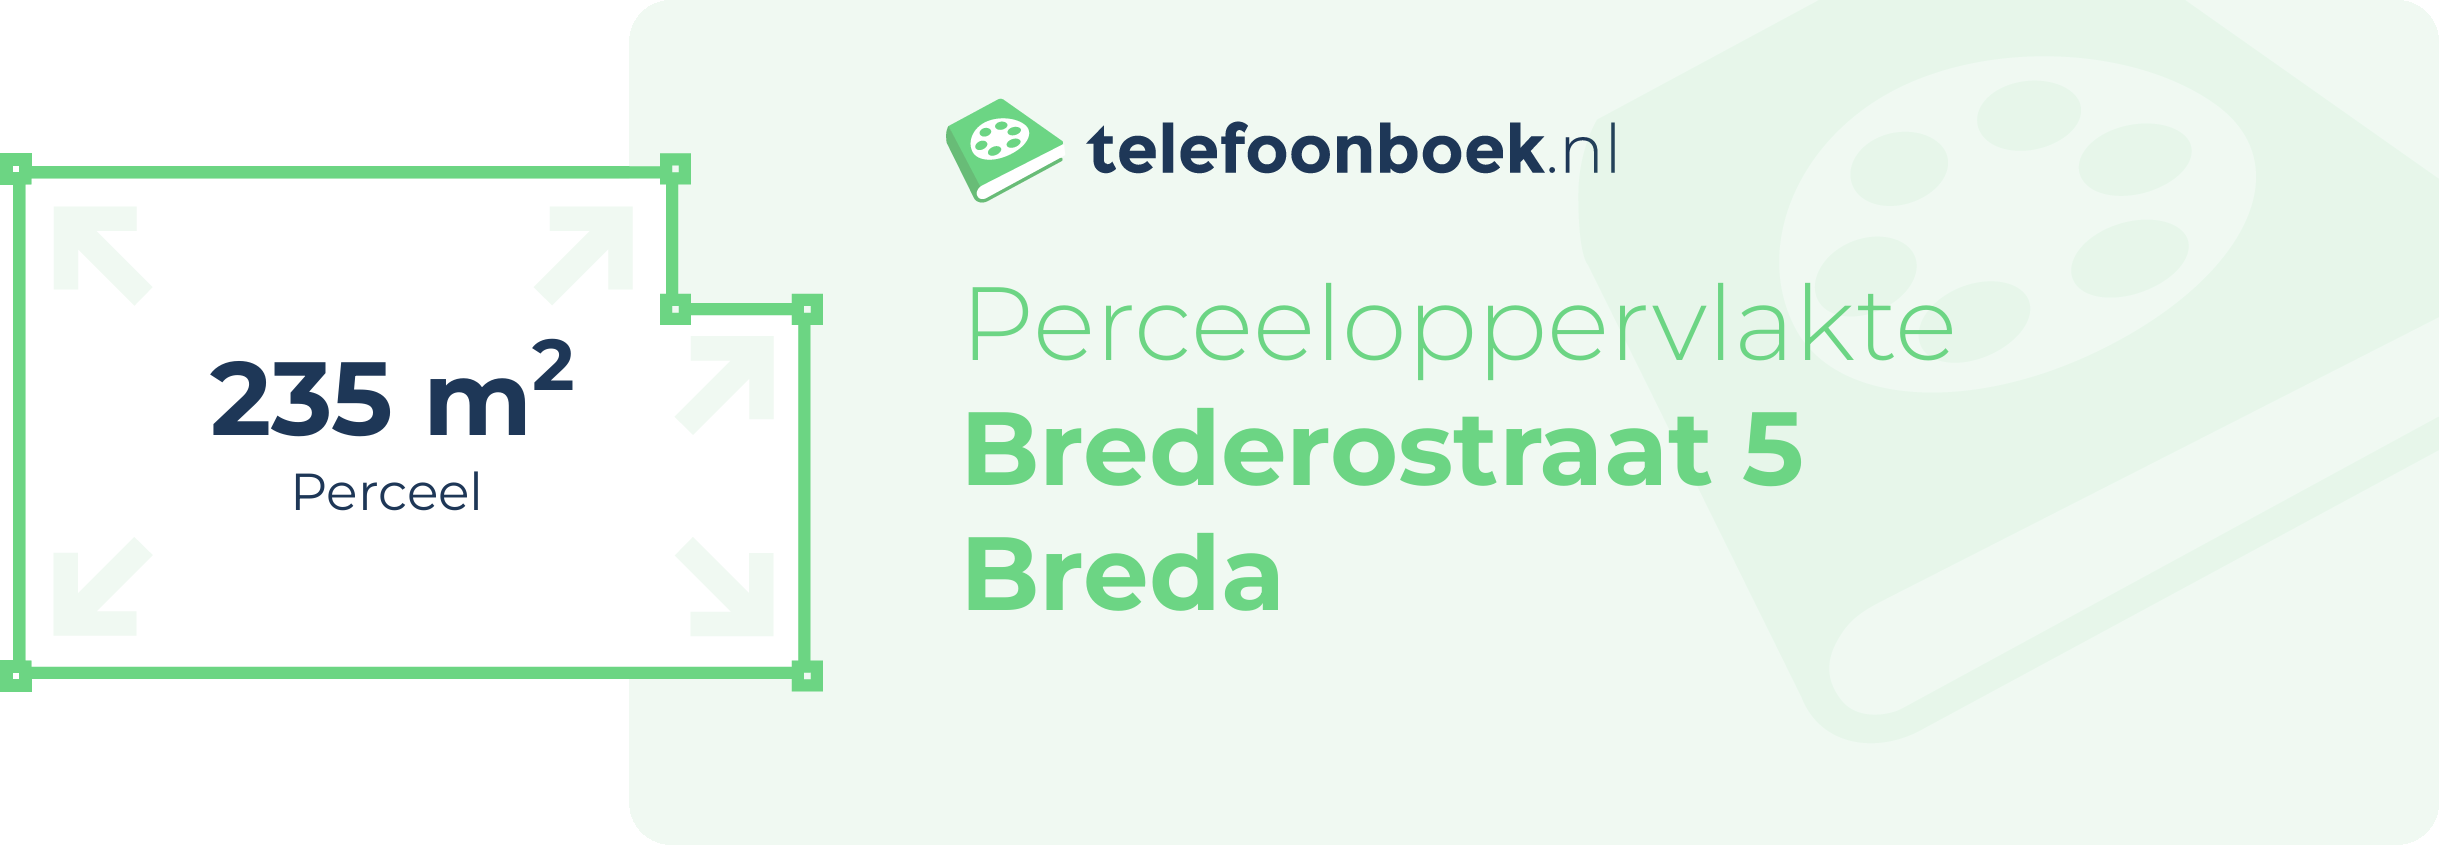 Perceeloppervlakte Brederostraat 5 Breda